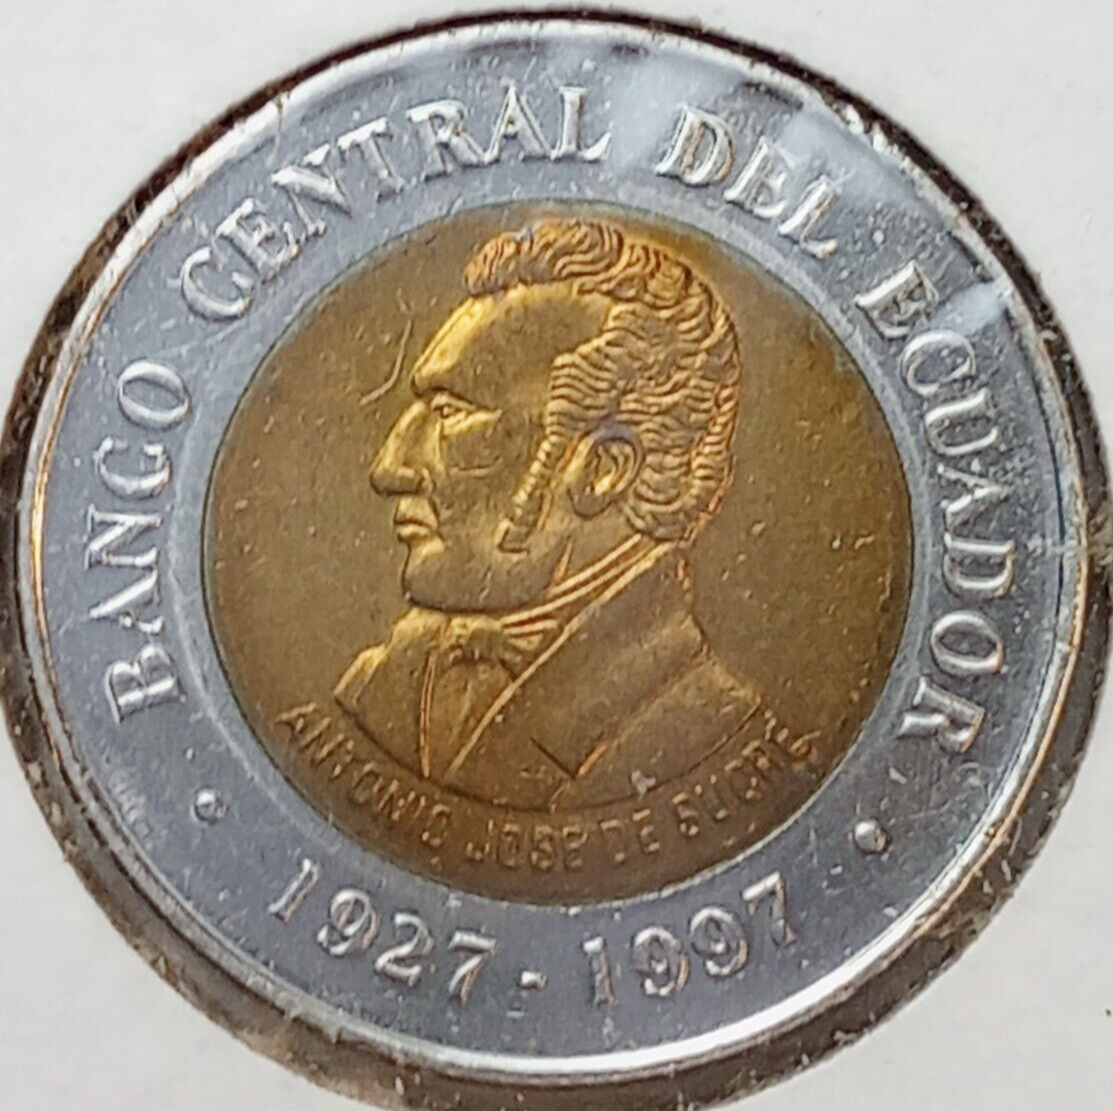 1997 Ecuador 100 Sucres coin uncirculated Bimetallic